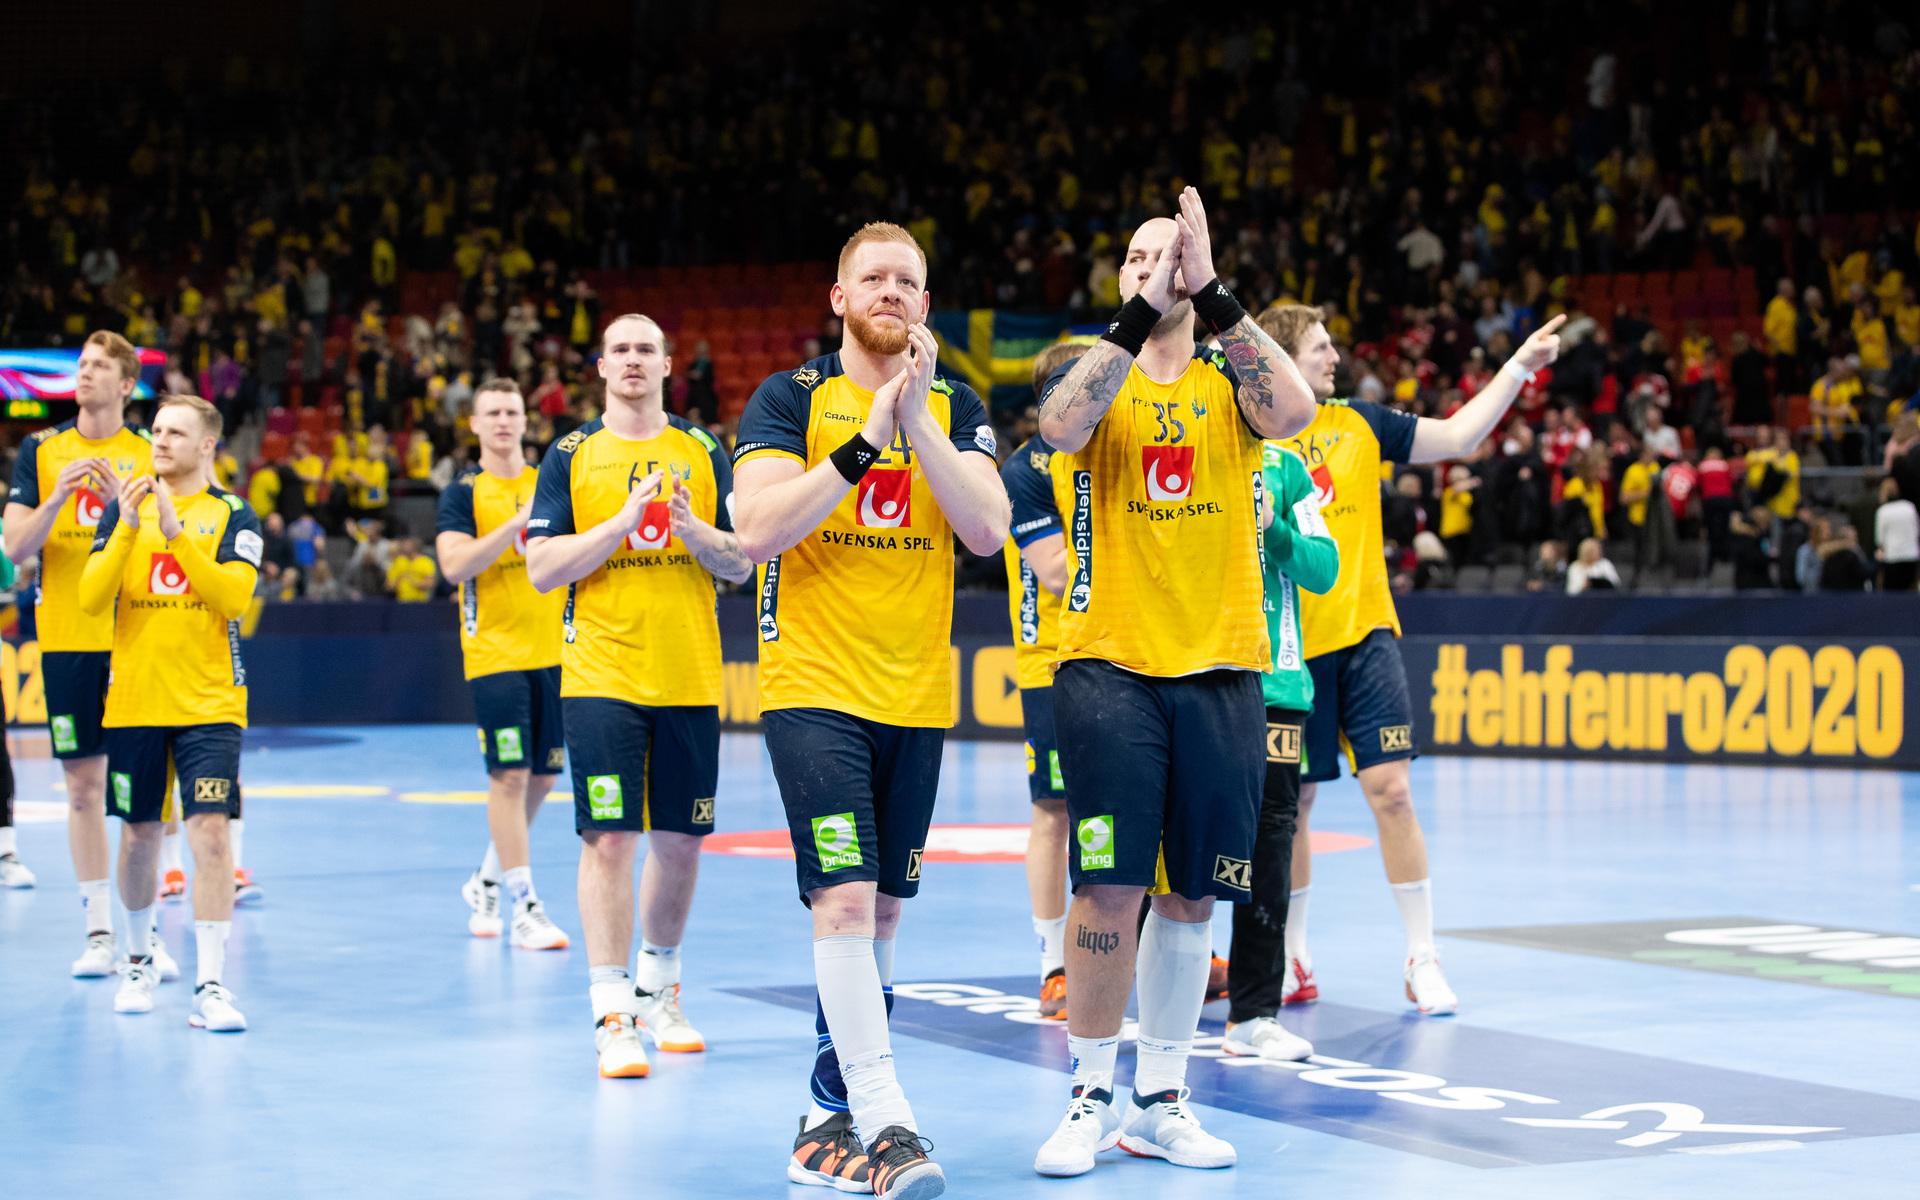 Det svenska herrlandslaget tackar publiken i Scandinavium i Göteborg efter match i EM mot Schweiz i januari 2020. Längst fram syns Jim Gottfridsson och Andreas Nilsson.